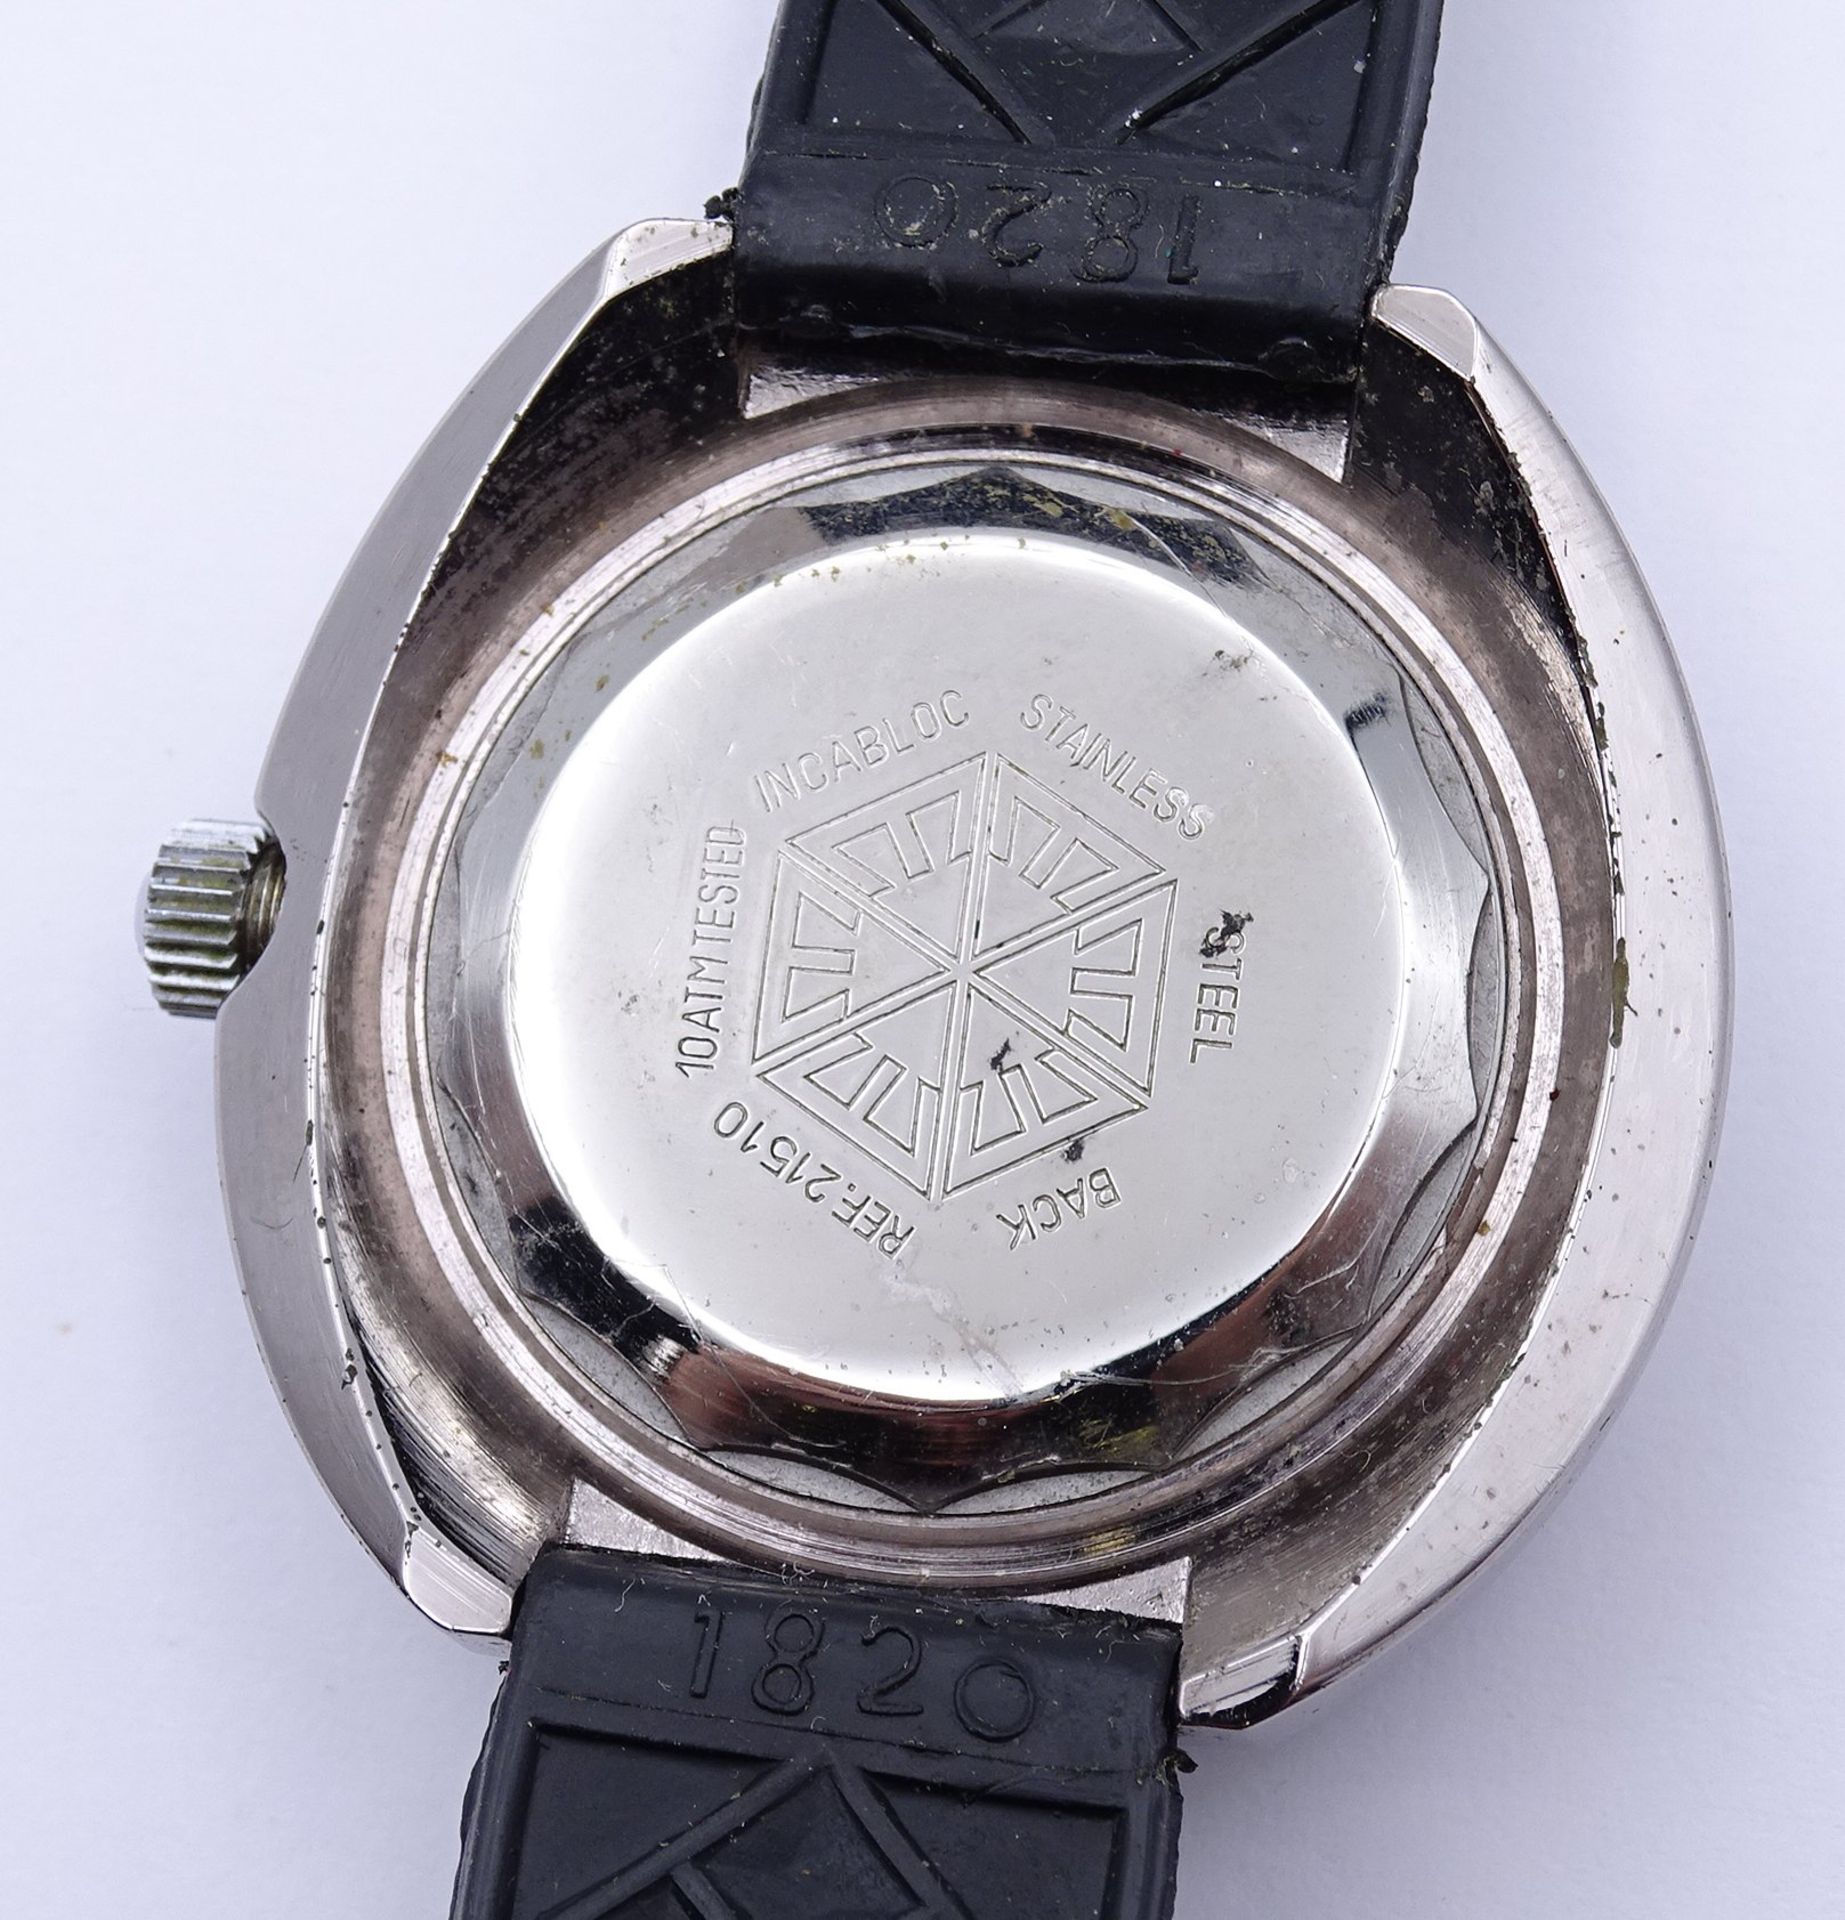 Bastler Armbanduhr Zifferblatt"Ermano" quartz - Zusammenbau mit Automatikwerk "Kotana", Werk läuft, - Bild 4 aus 4